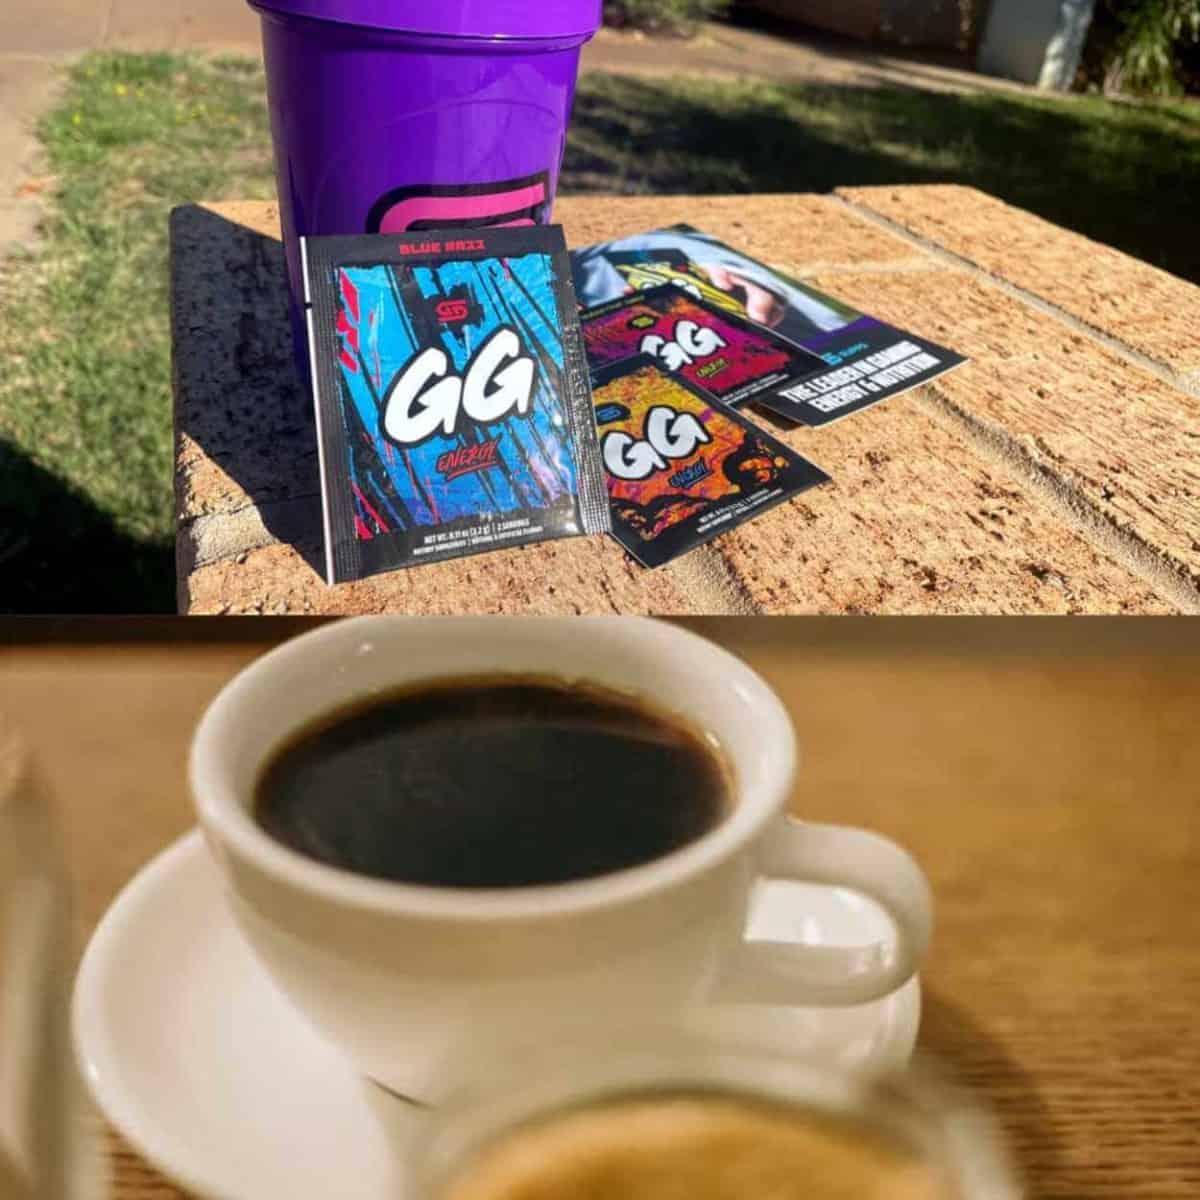 Comparison image of GG vs coffee